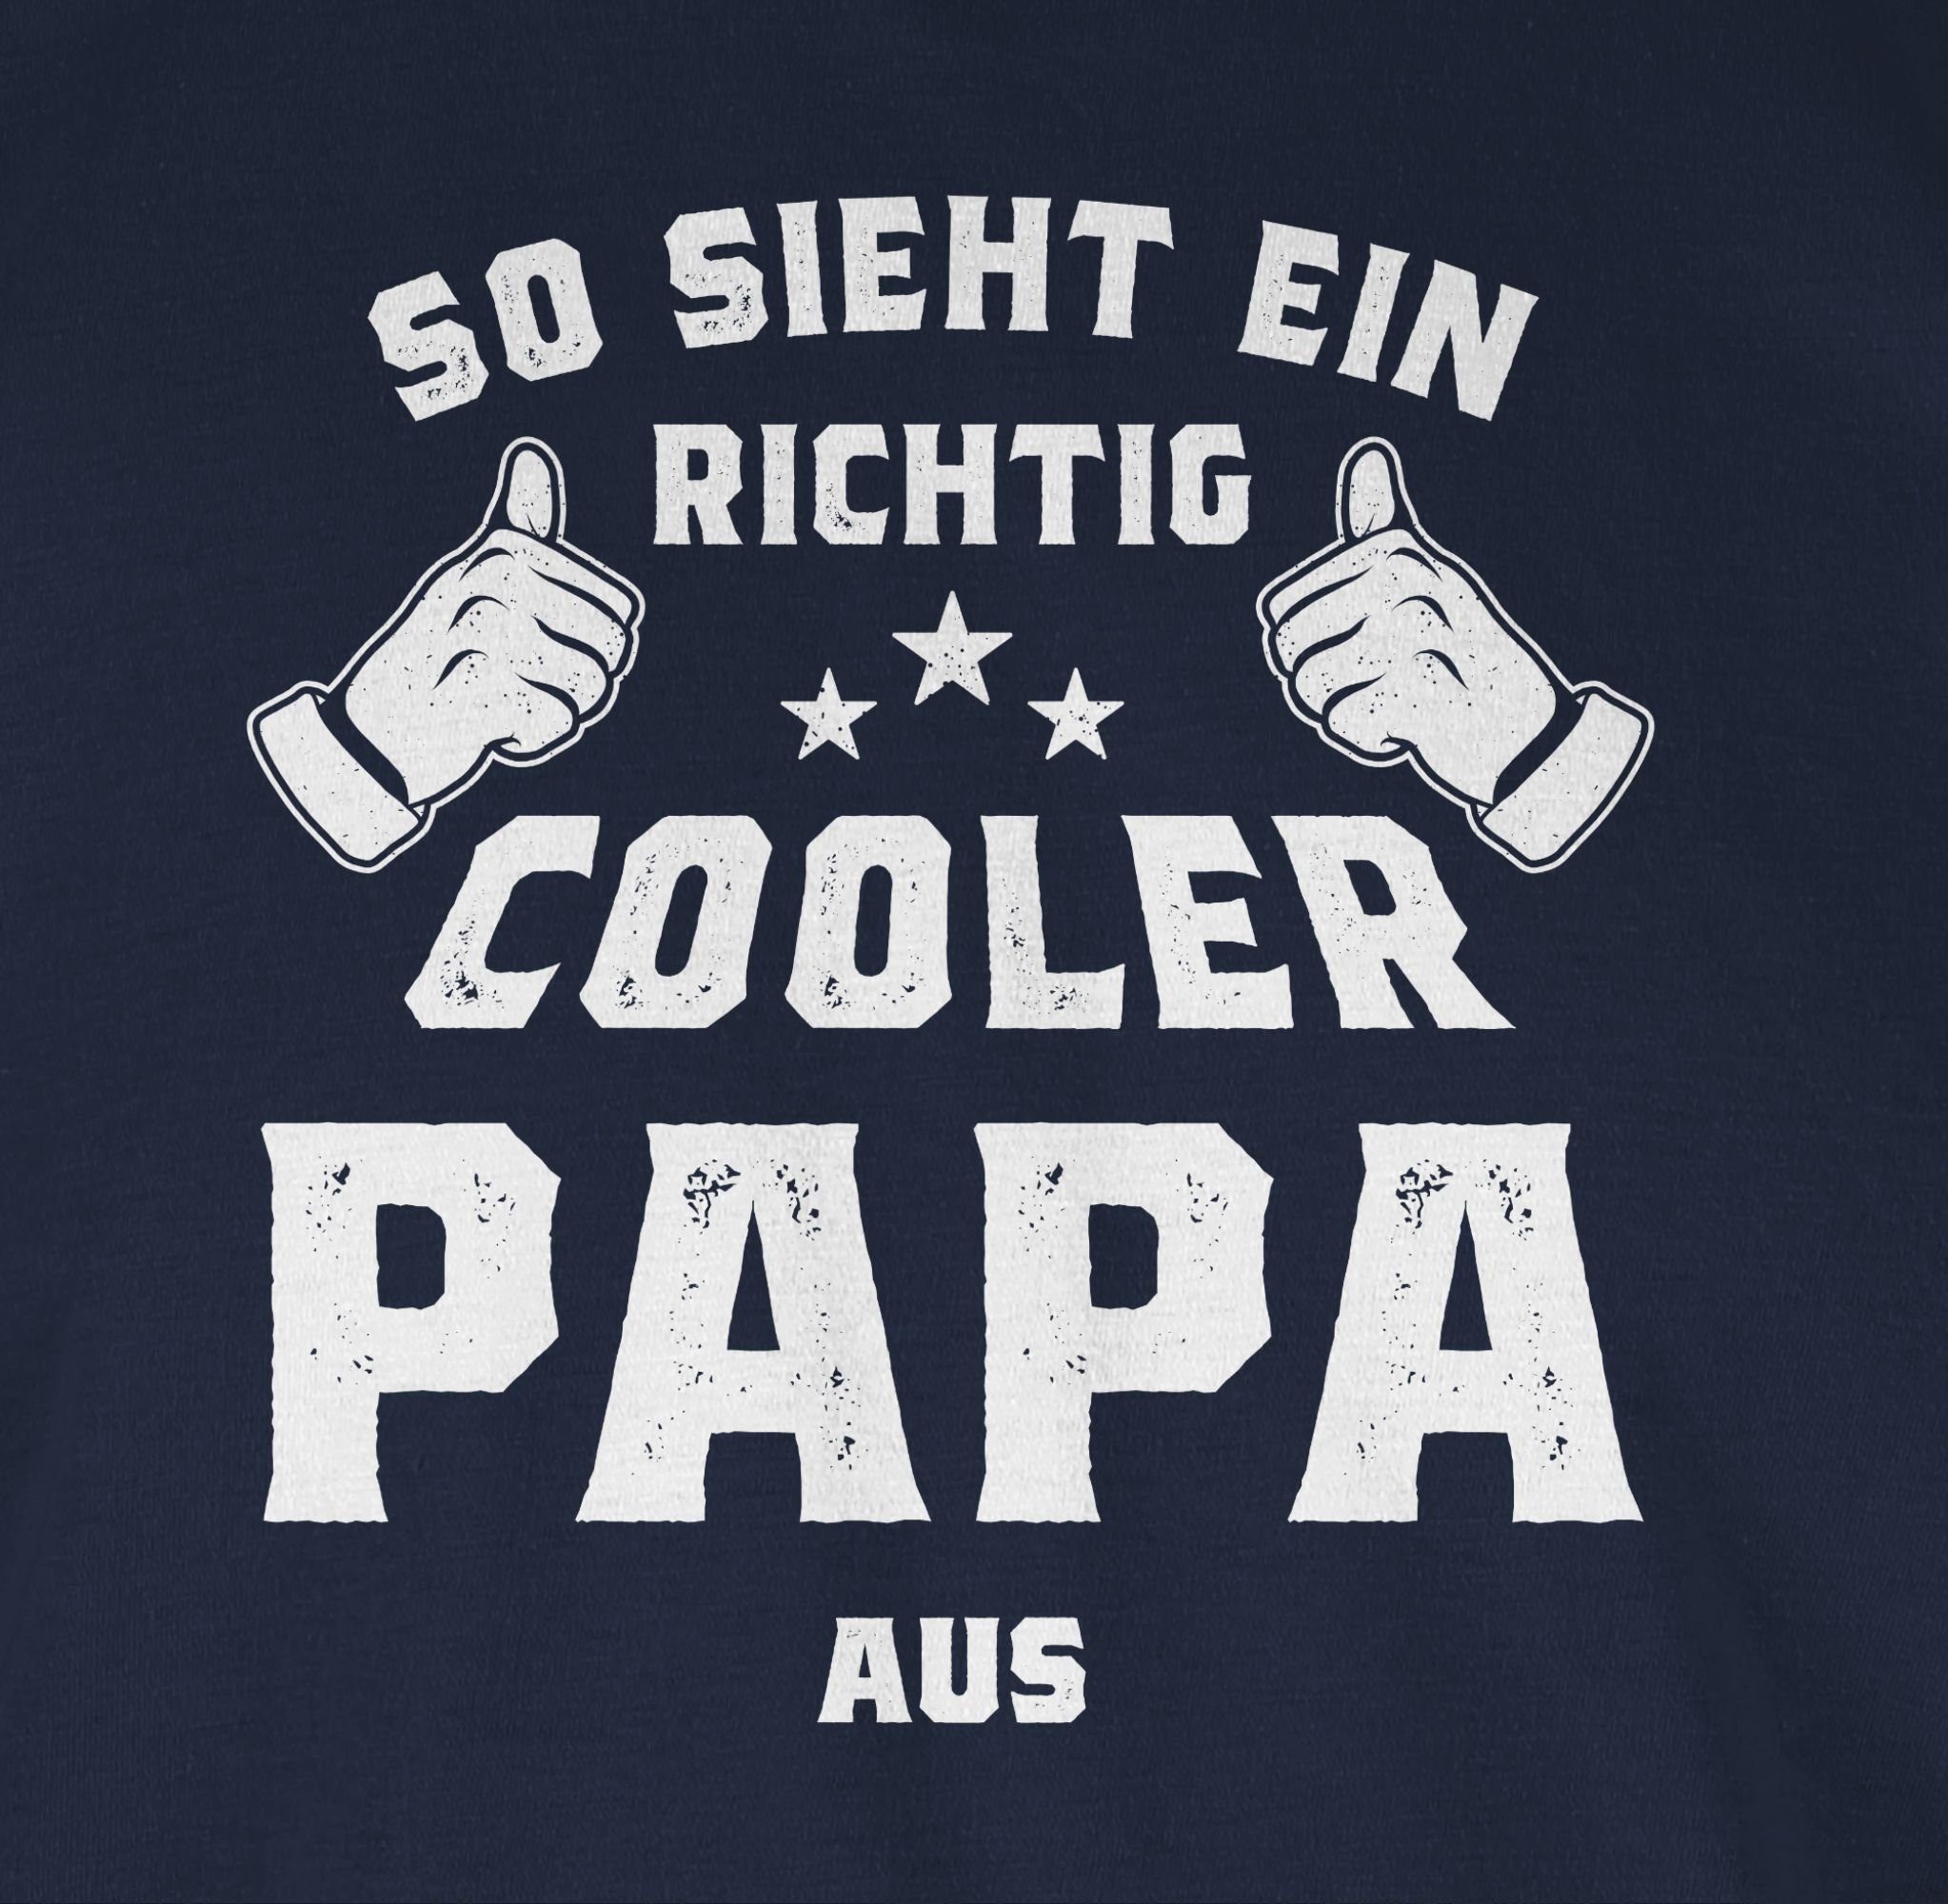 Herren Shirts Shirtracer T-Shirt So sieht ein richtig cooler Papa aus - Vatertag Geschenk - Herren Premium T-Shirt Vater Geschen